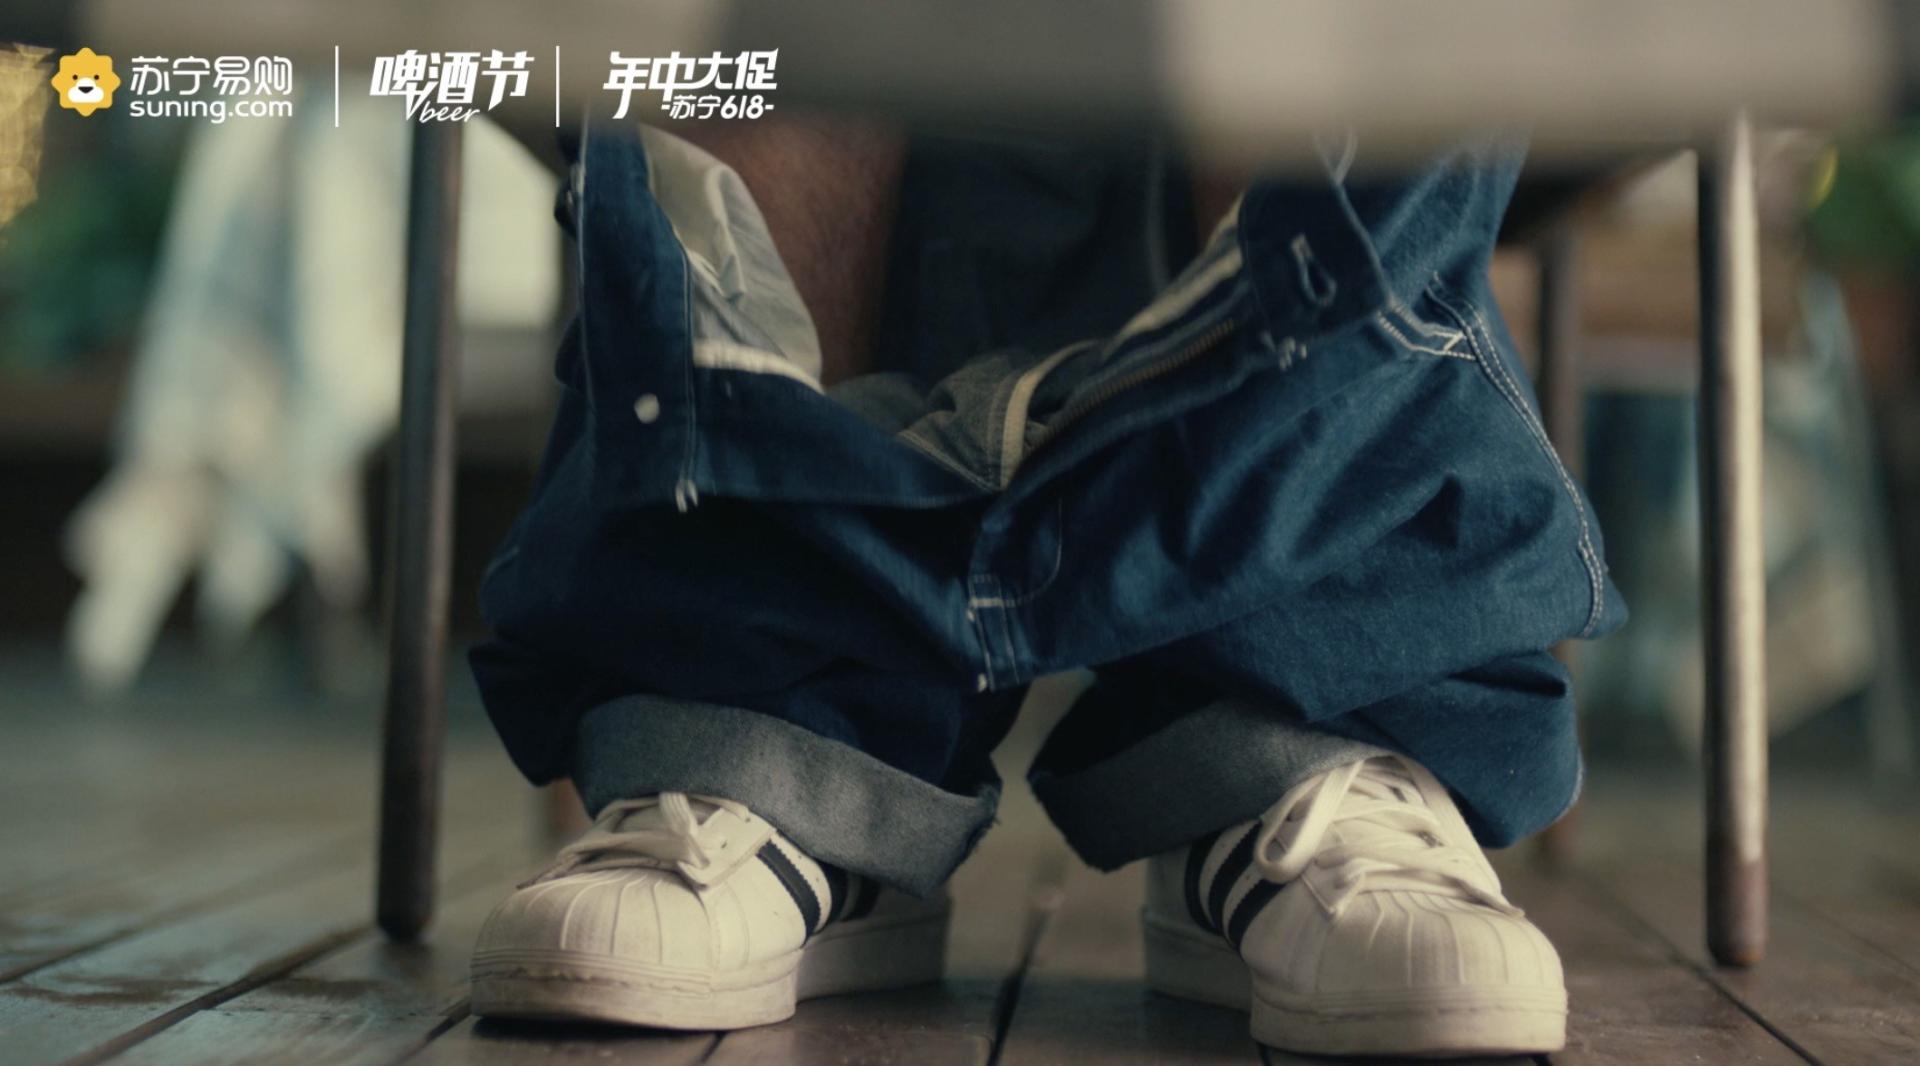 苏宁龙虾节广告《分手篇》